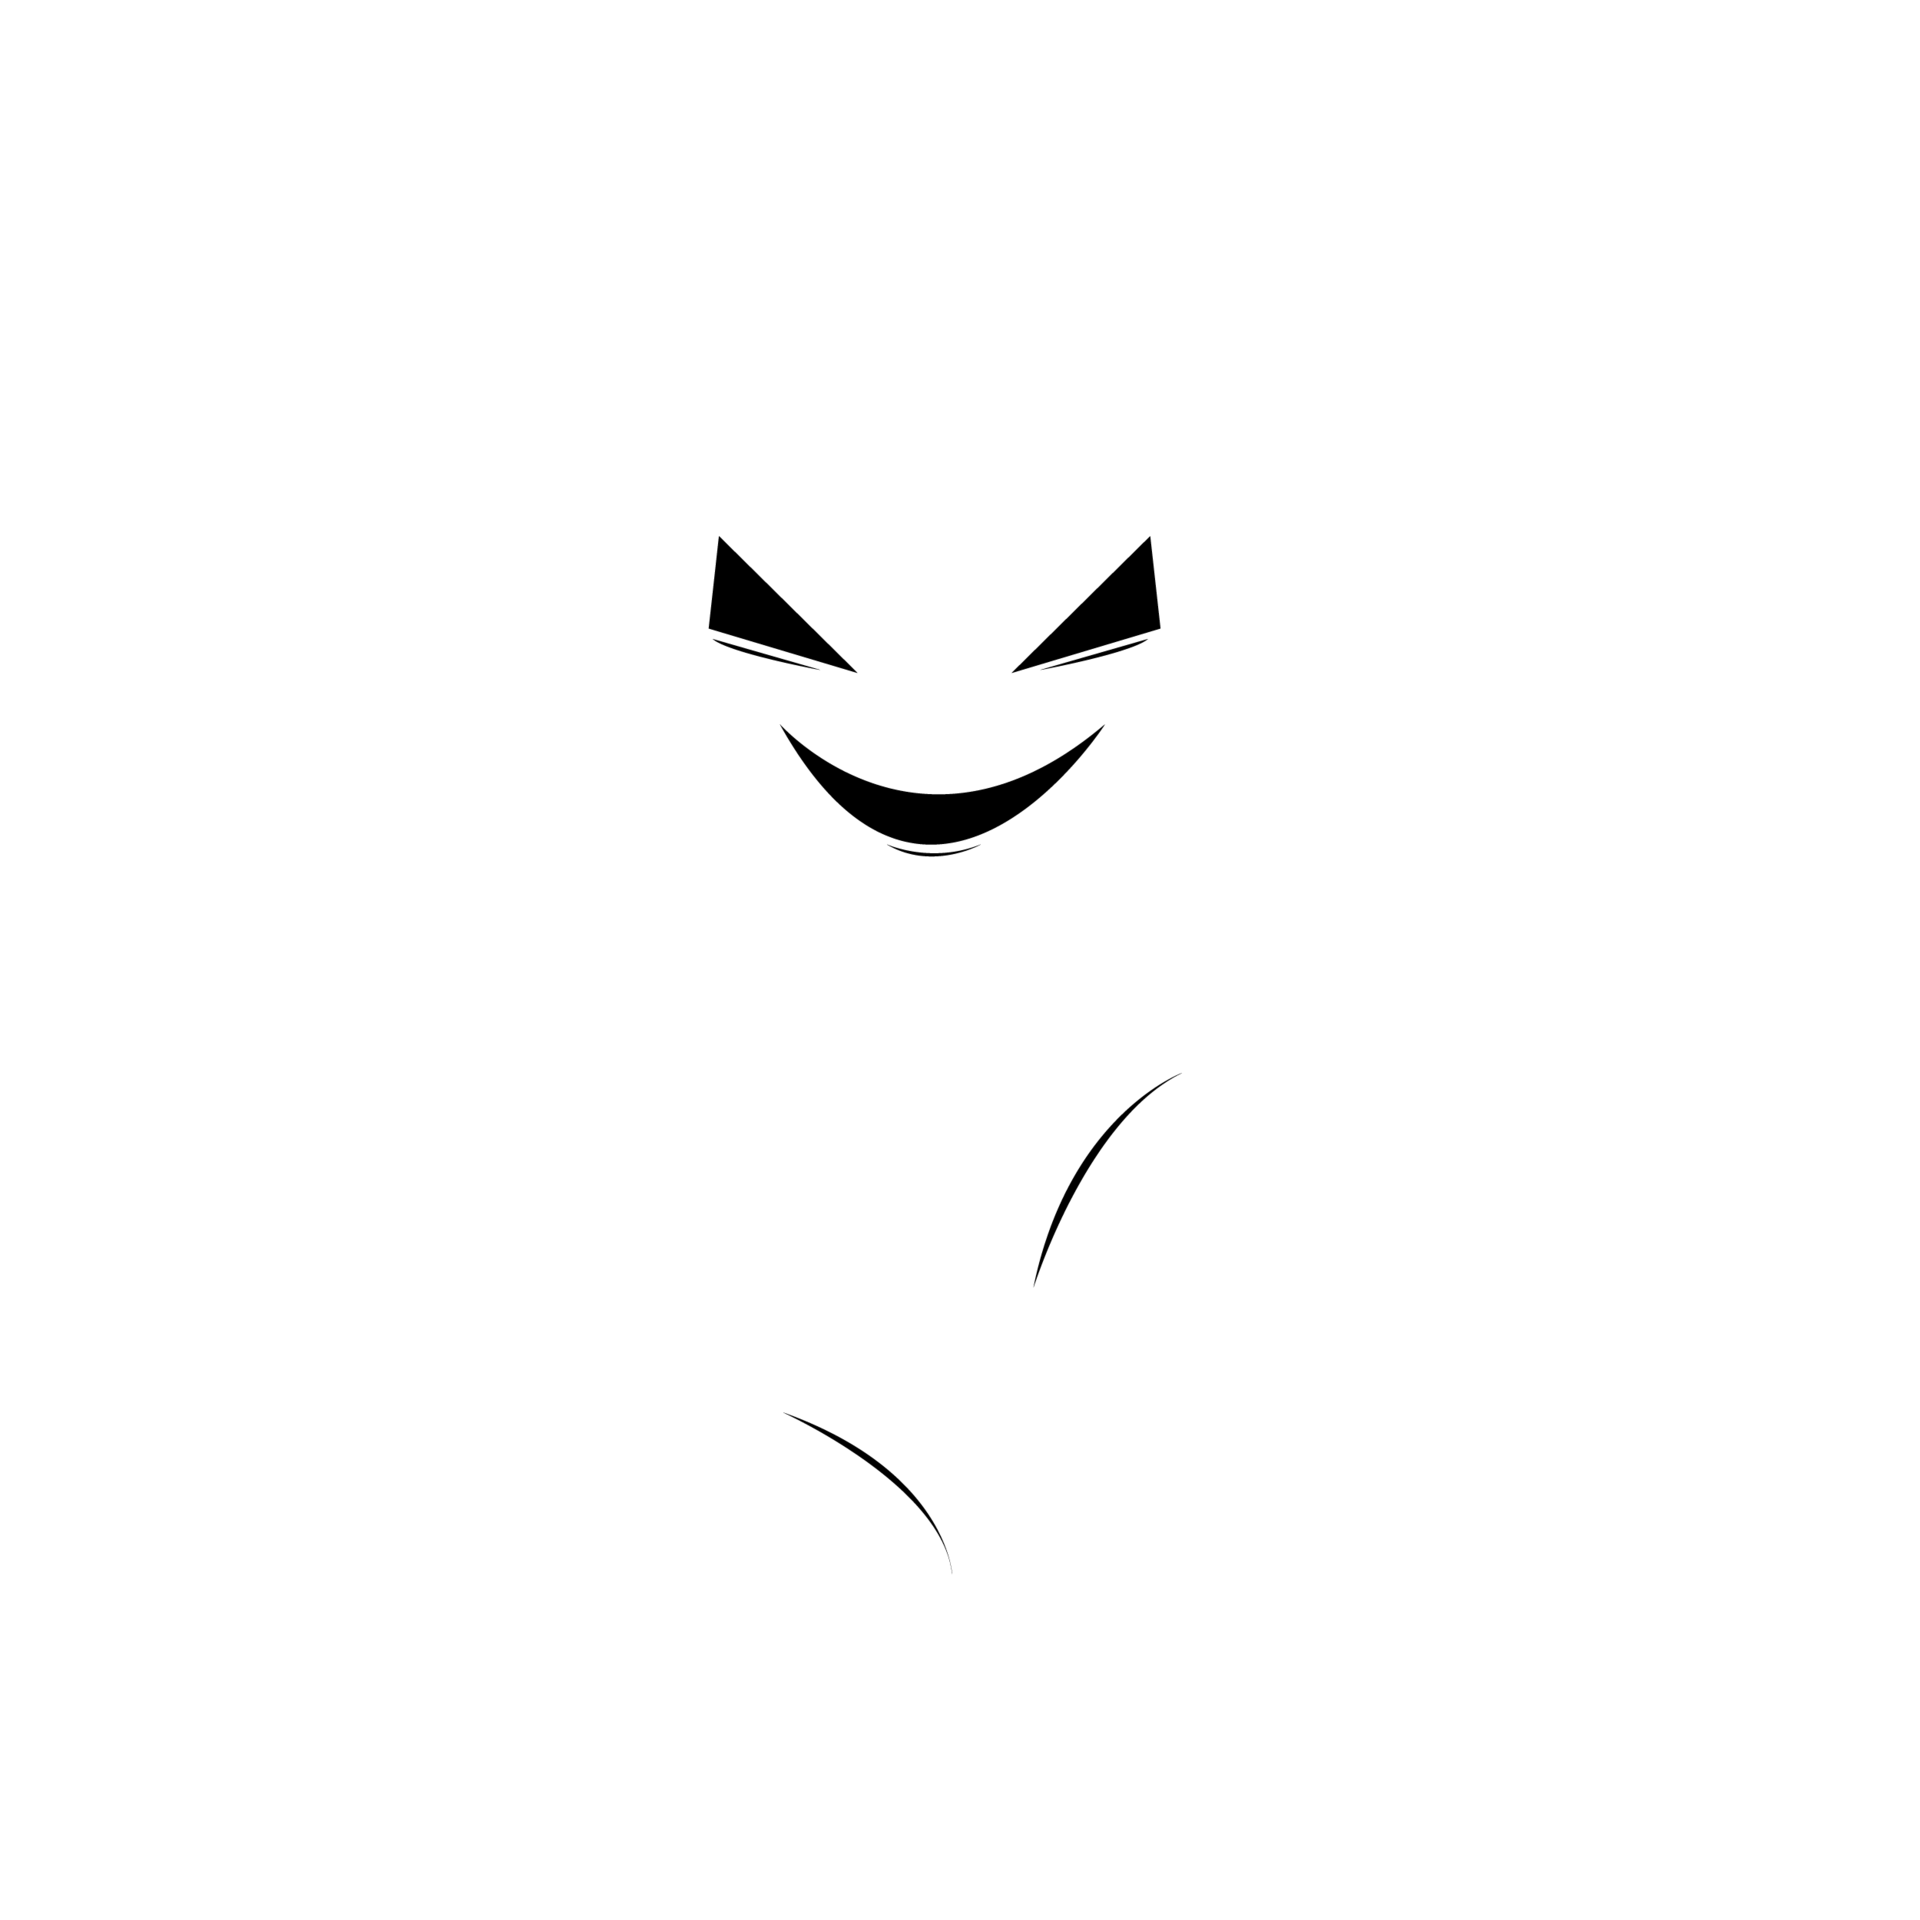 Halloween white ghost - Đi giữa màn đêm đen tối và gặp phải một con ma trắng luôn khiếp sợ nhất trong lễ hội Halloween. Nếu bạn yêu thích cảm giác hồi hộp và ám ảnh, hãy ghé thăm chúng tôi để thưởng thức những hình ảnh ma quái này.